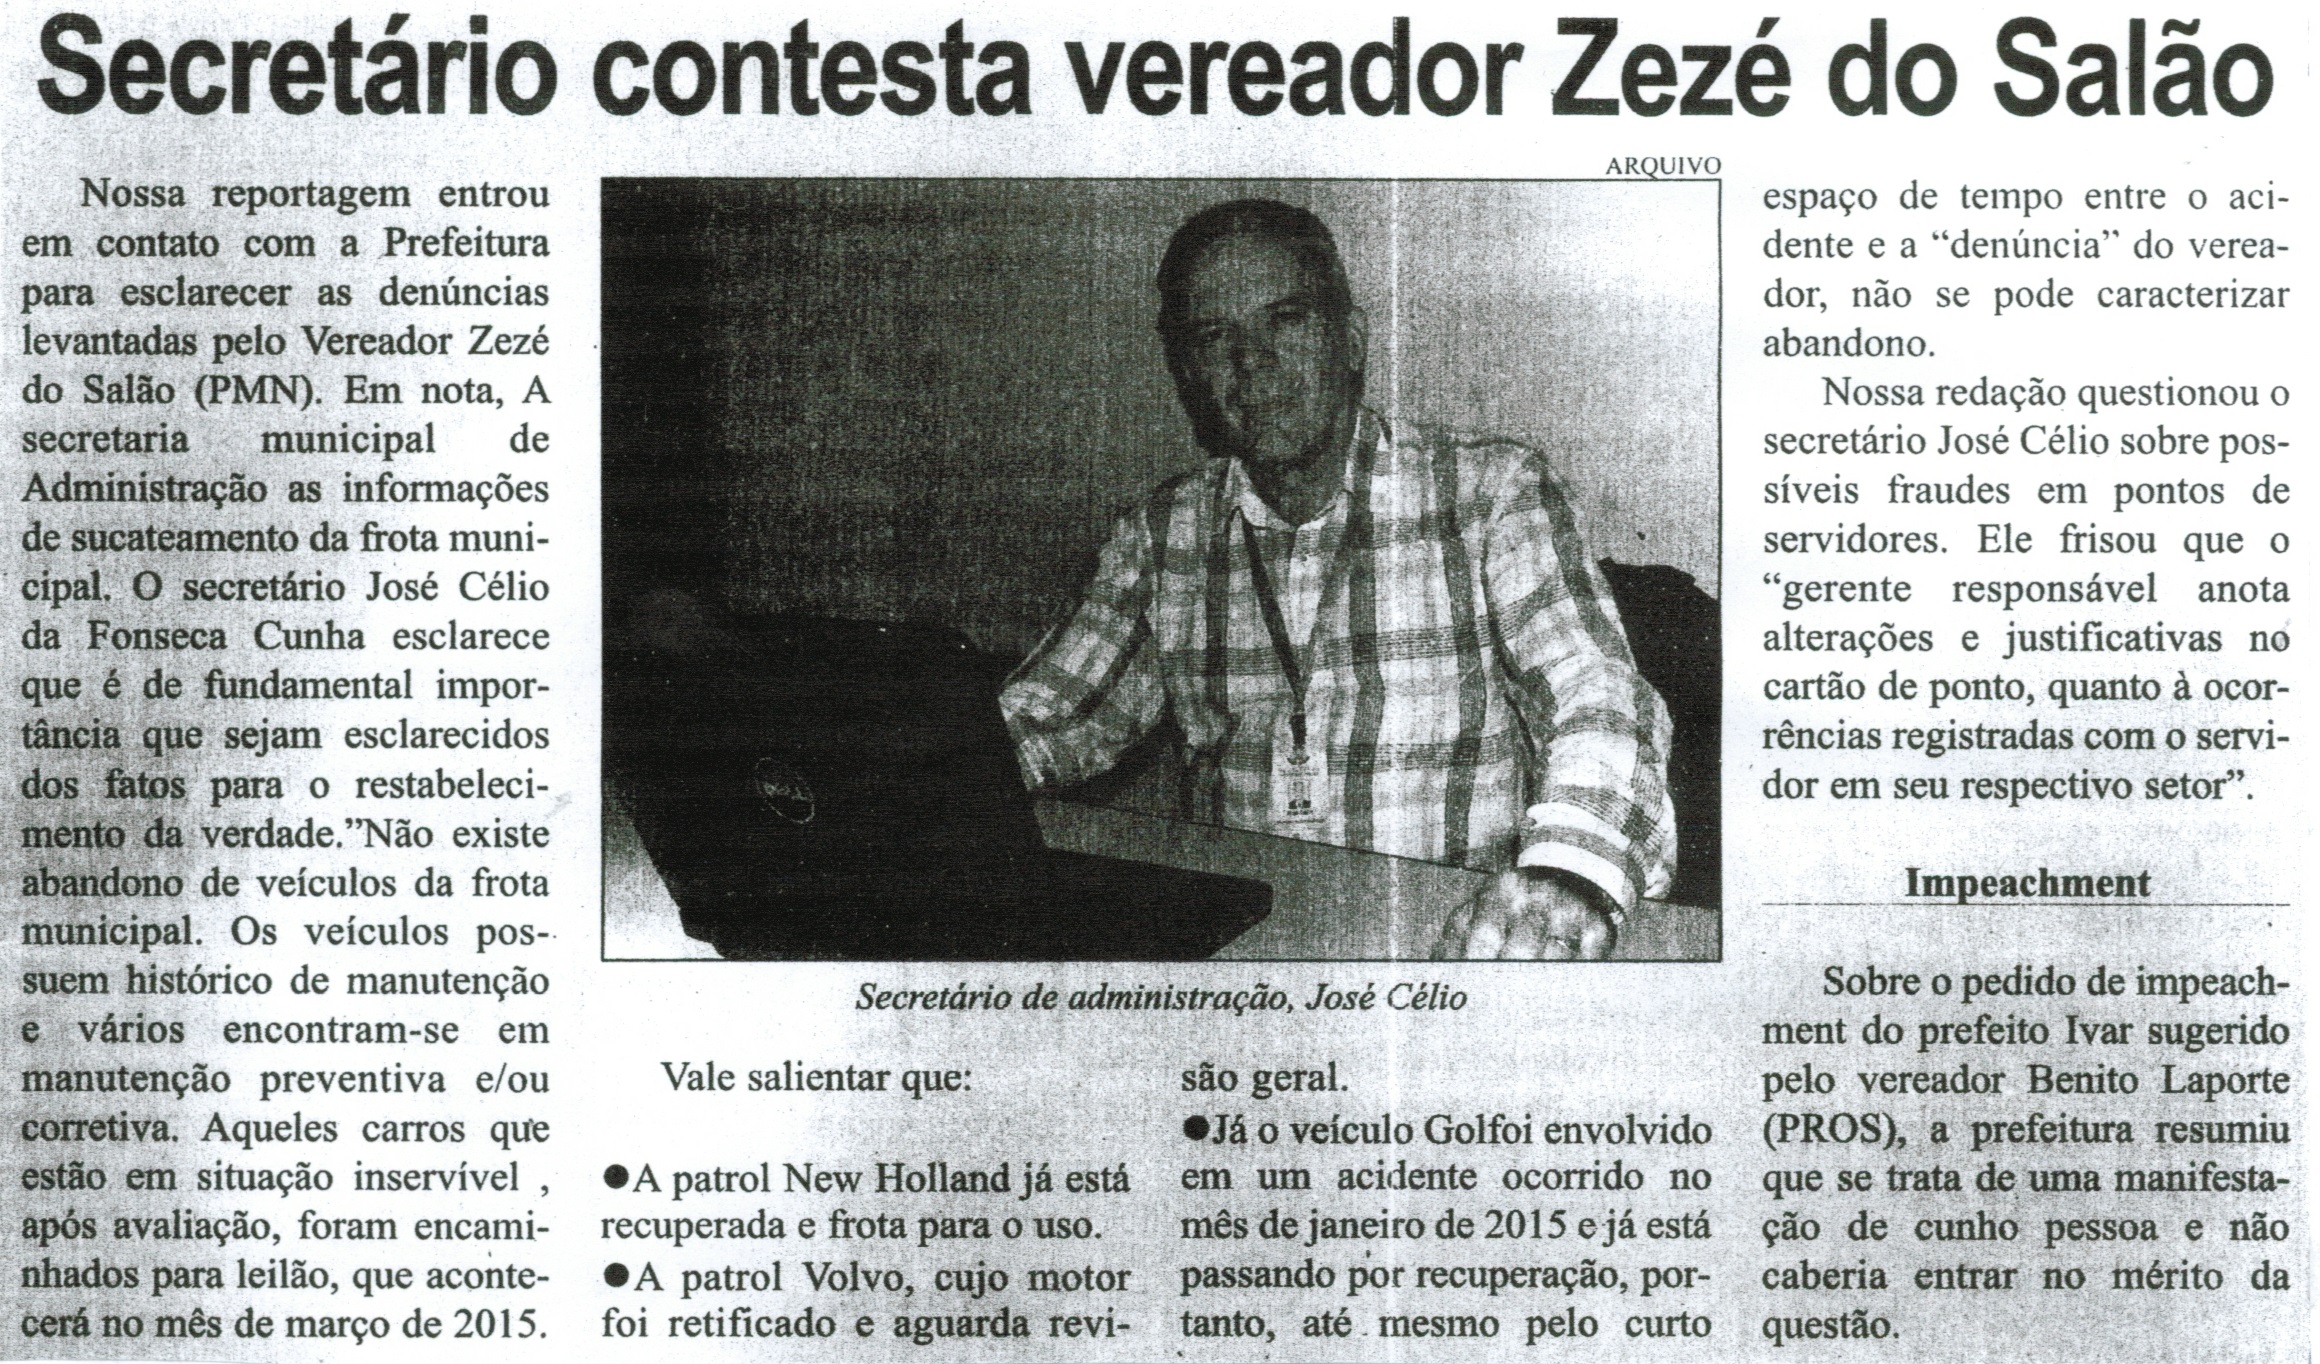 Secretário contesta vereador Zezé do Salão. Correio de Minas, Conselheiro Lafaiete, 28 fev. 2015, p. 04.